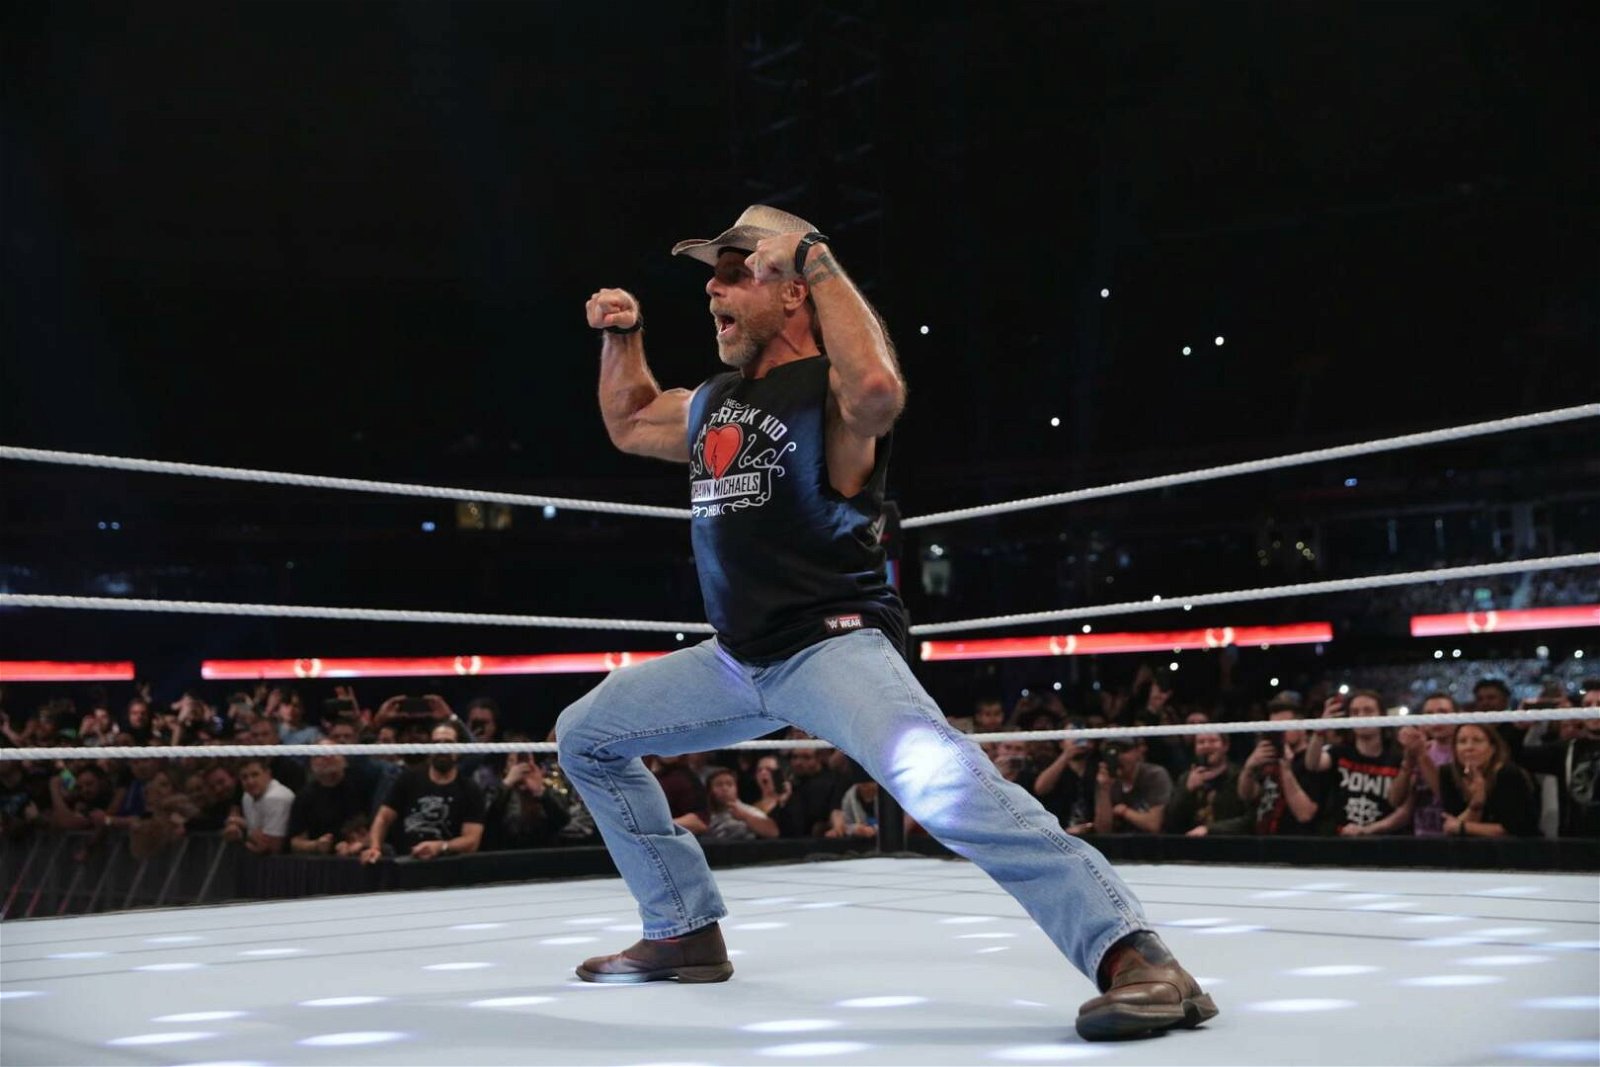 Immagine di Wrestling, intervista a Shawn Michaels: leggenda indiscussa della WWE